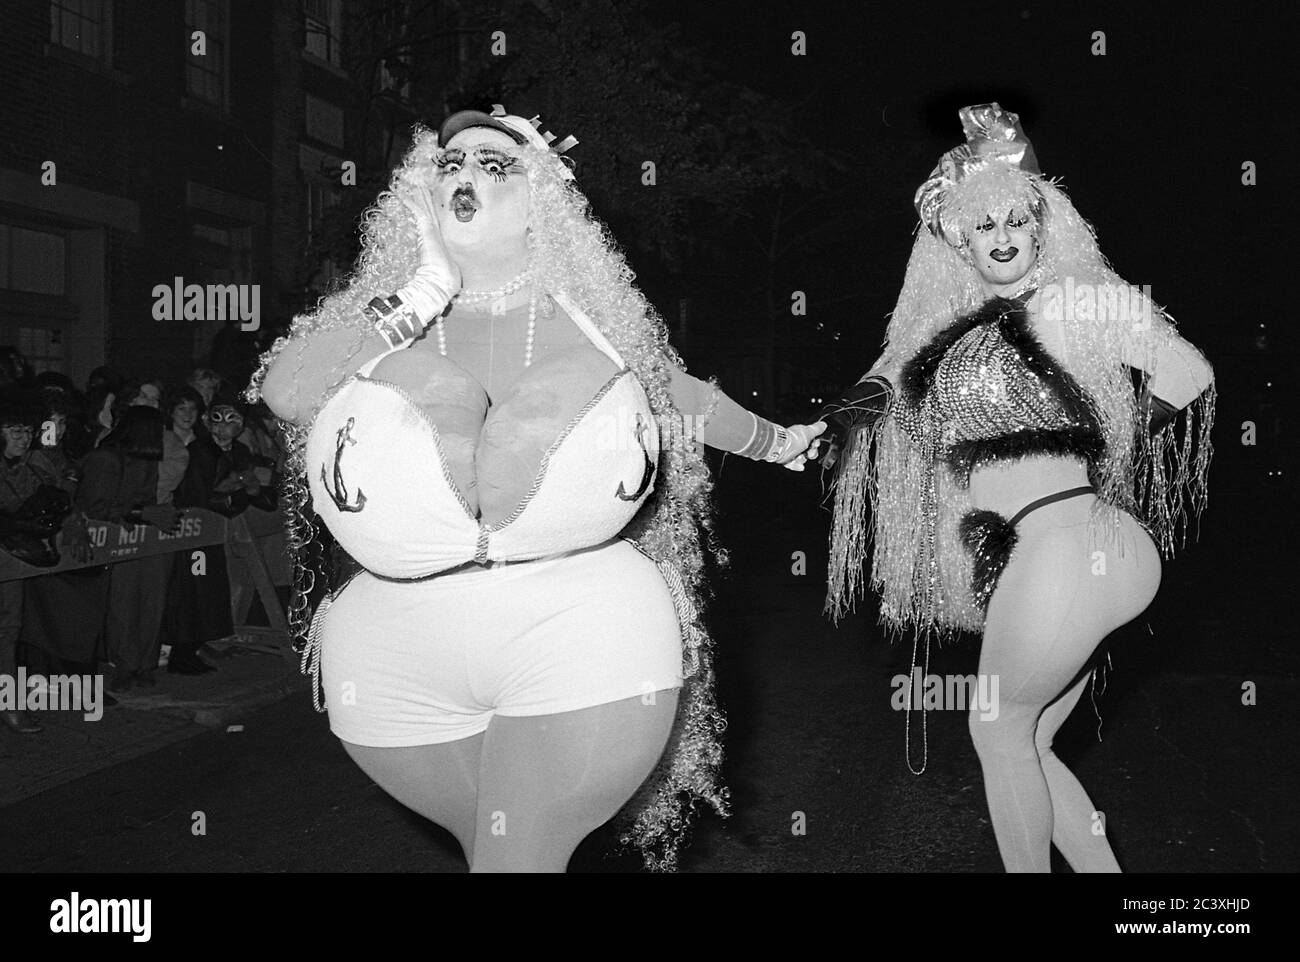 Uomini in drag al Greenwich Village Halloween Parade, New York City, USA negli anni '80 fotografati con film in bianco e nero di notte. Foto Stock